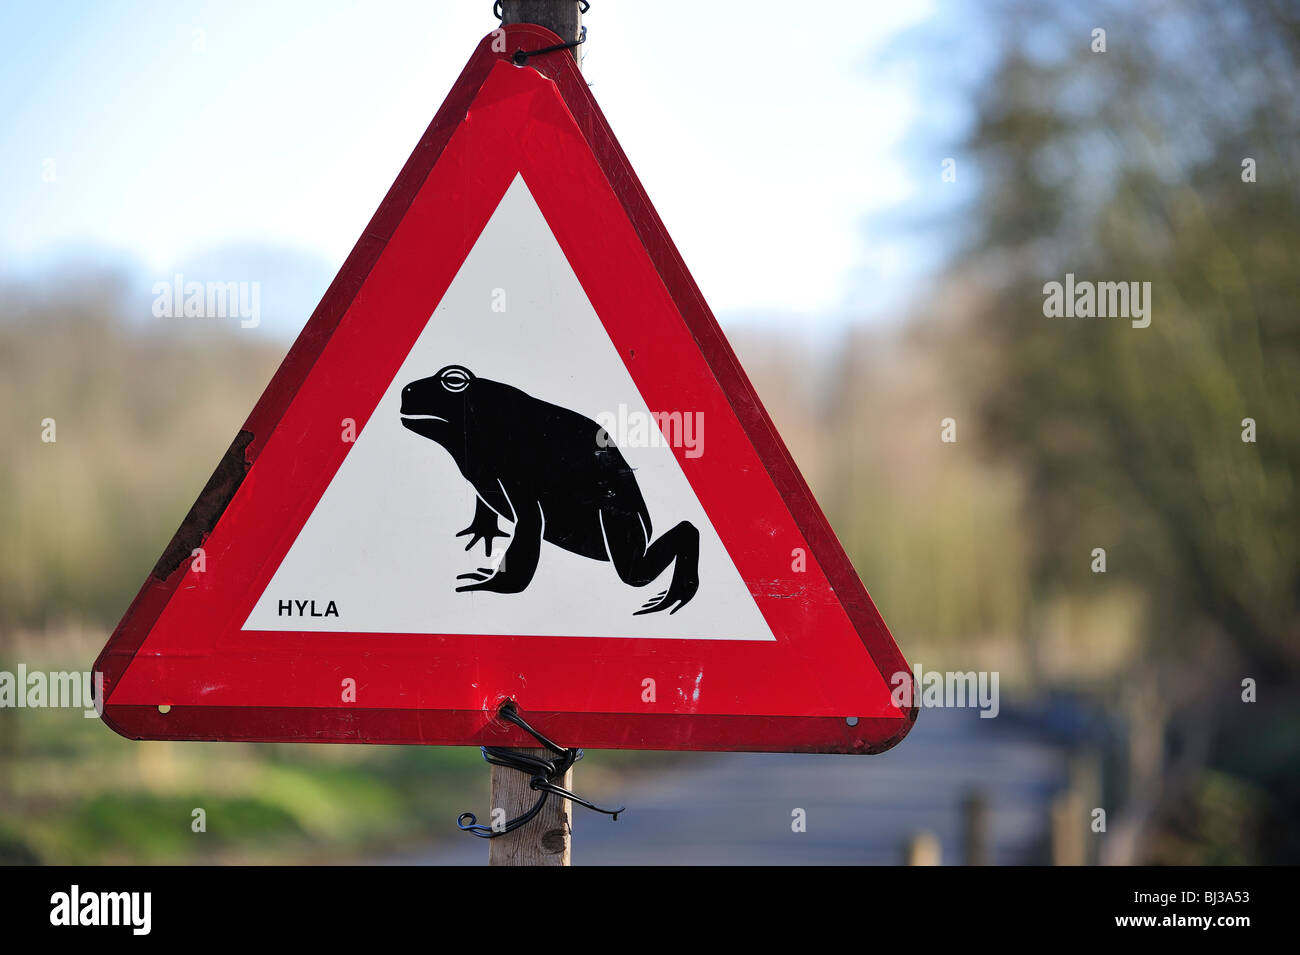 Panneau d'avertissement pour les amphibiens / crapauds traversant la rue pendant la migration annuelle au printemps, Belgique Banque D'Images